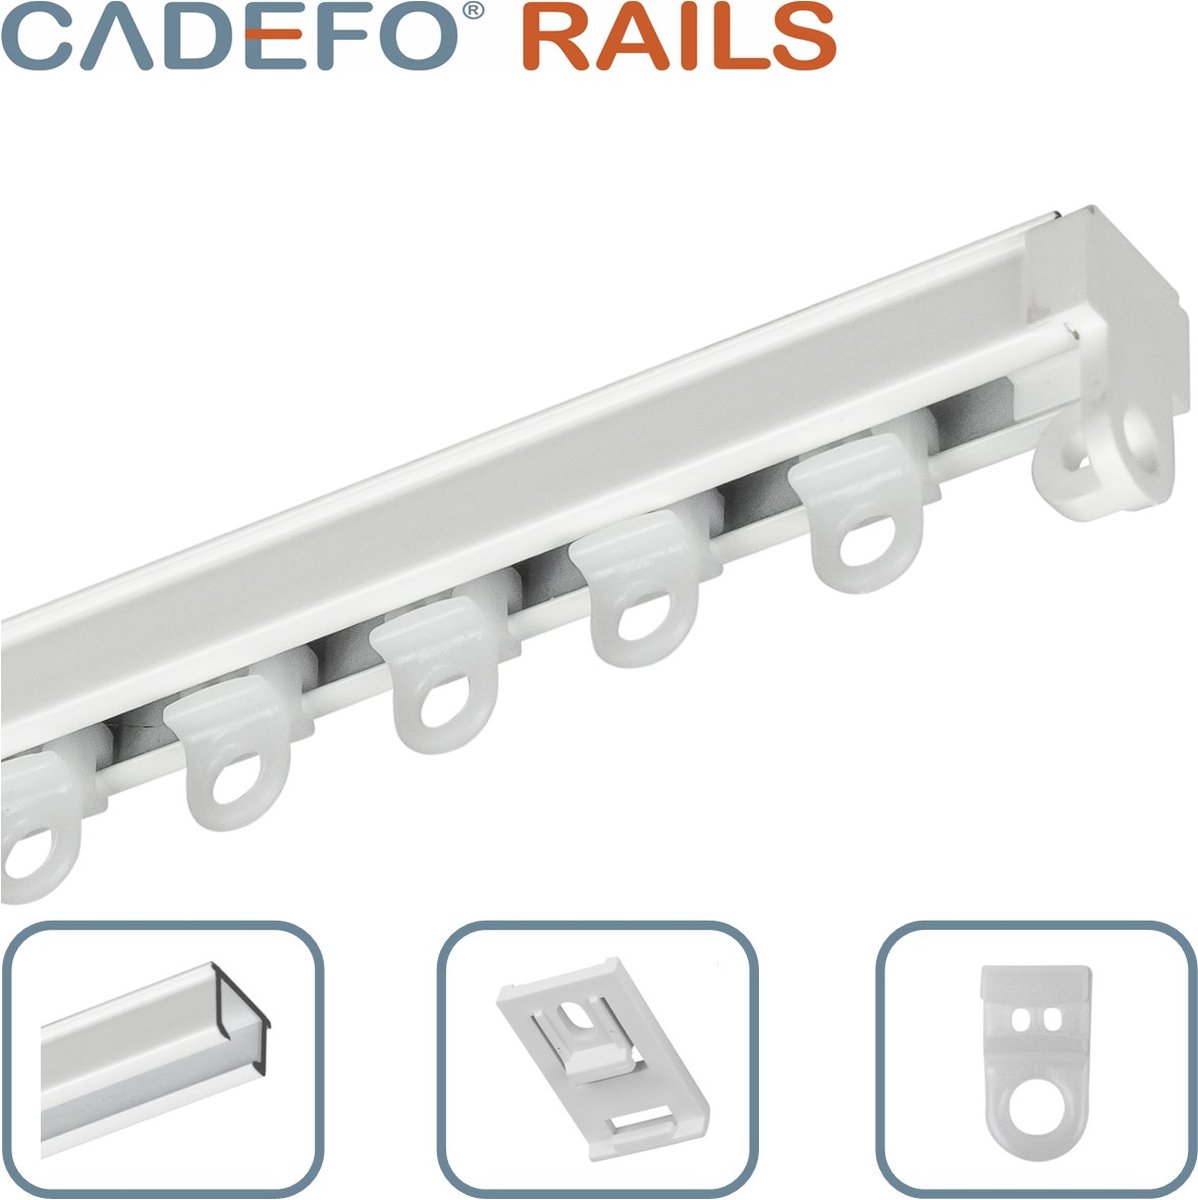 CADEFO RAILS (501 - 550 cm) Gordijnrails - Compleet op maat! - UIT 1 STUK - Leverbaar tot 6 meter - Plafondbevestiging - Lengte 517 cm